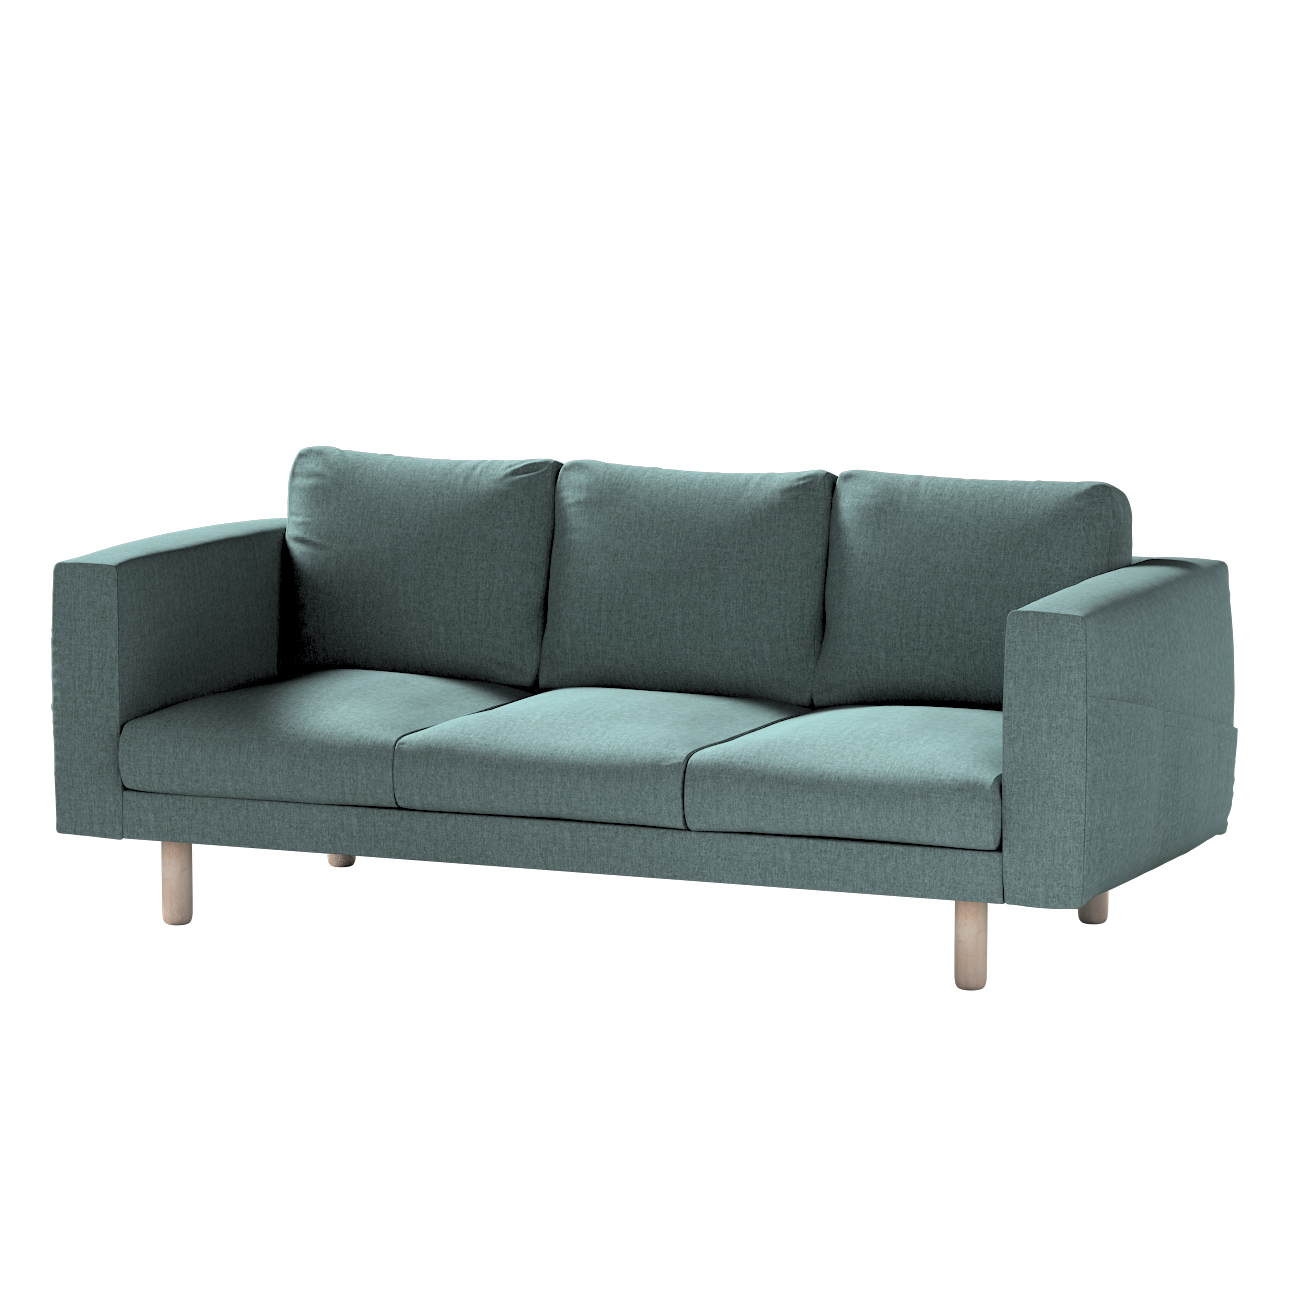 Bezug für Norsborg 3-Sitzer Sofa, grau- blau, Norsborg 3-Sitzer Sofabezug, günstig online kaufen